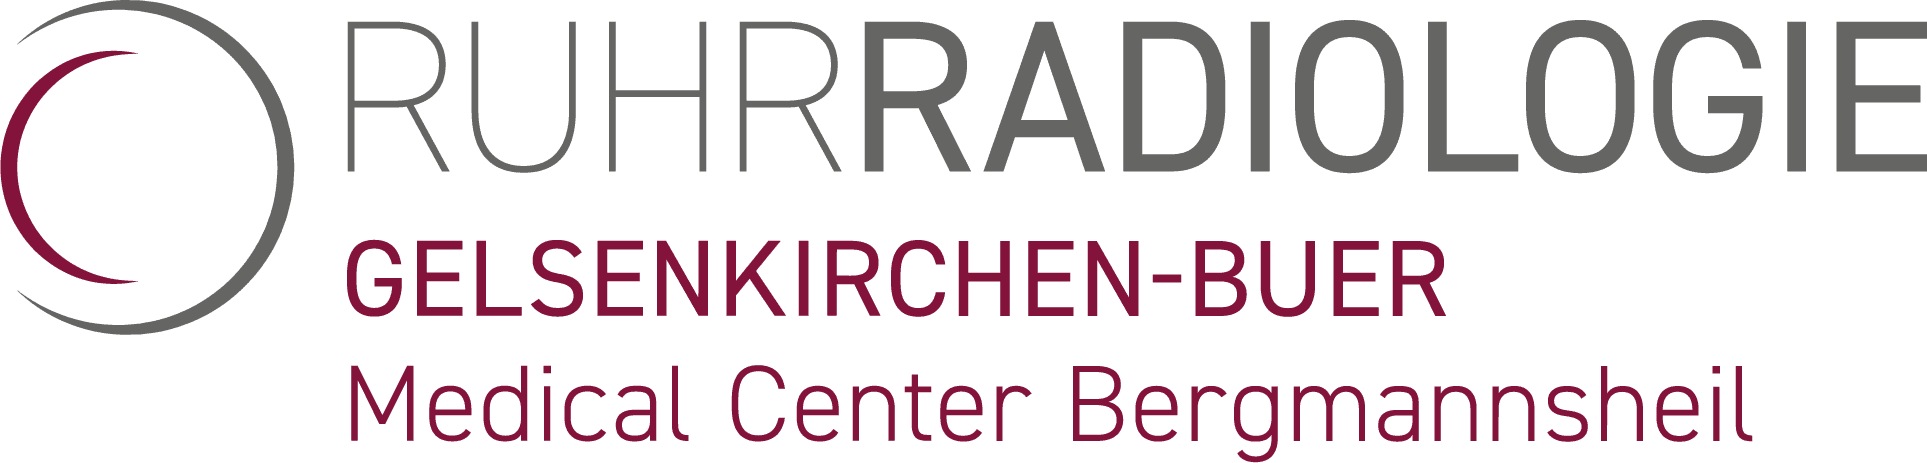 Ruhrradiologie_Gelsenkirchen_Buer_Bergmannsheil_Logo_trans.png